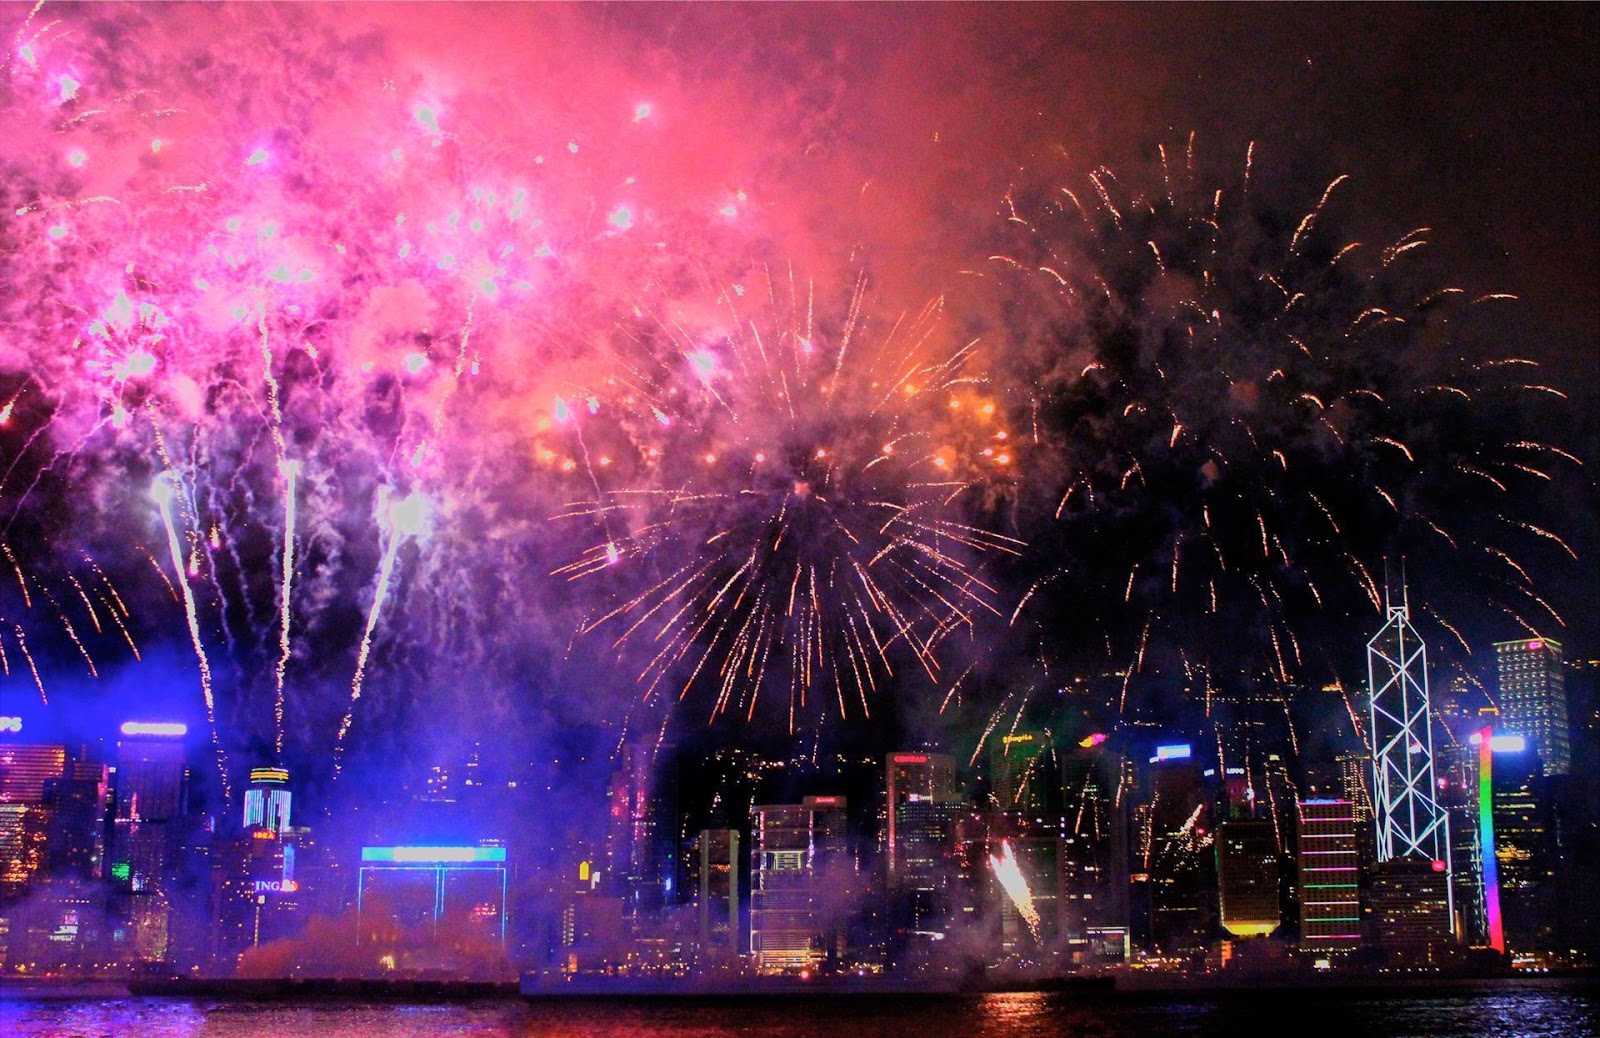 Lovely Fireworks 2016 sẽ khiến bạn say mê với những khung cảnh đầy màu sắc và những bông hoa pháo đang rực rỡ trên bầu trời. Chỉ cần ngắm nhìn những bức ảnh này trong vài giây, bạn sẽ cảm thấy như mình đang đón một ngày lễ được ấm áp và vui tươi.